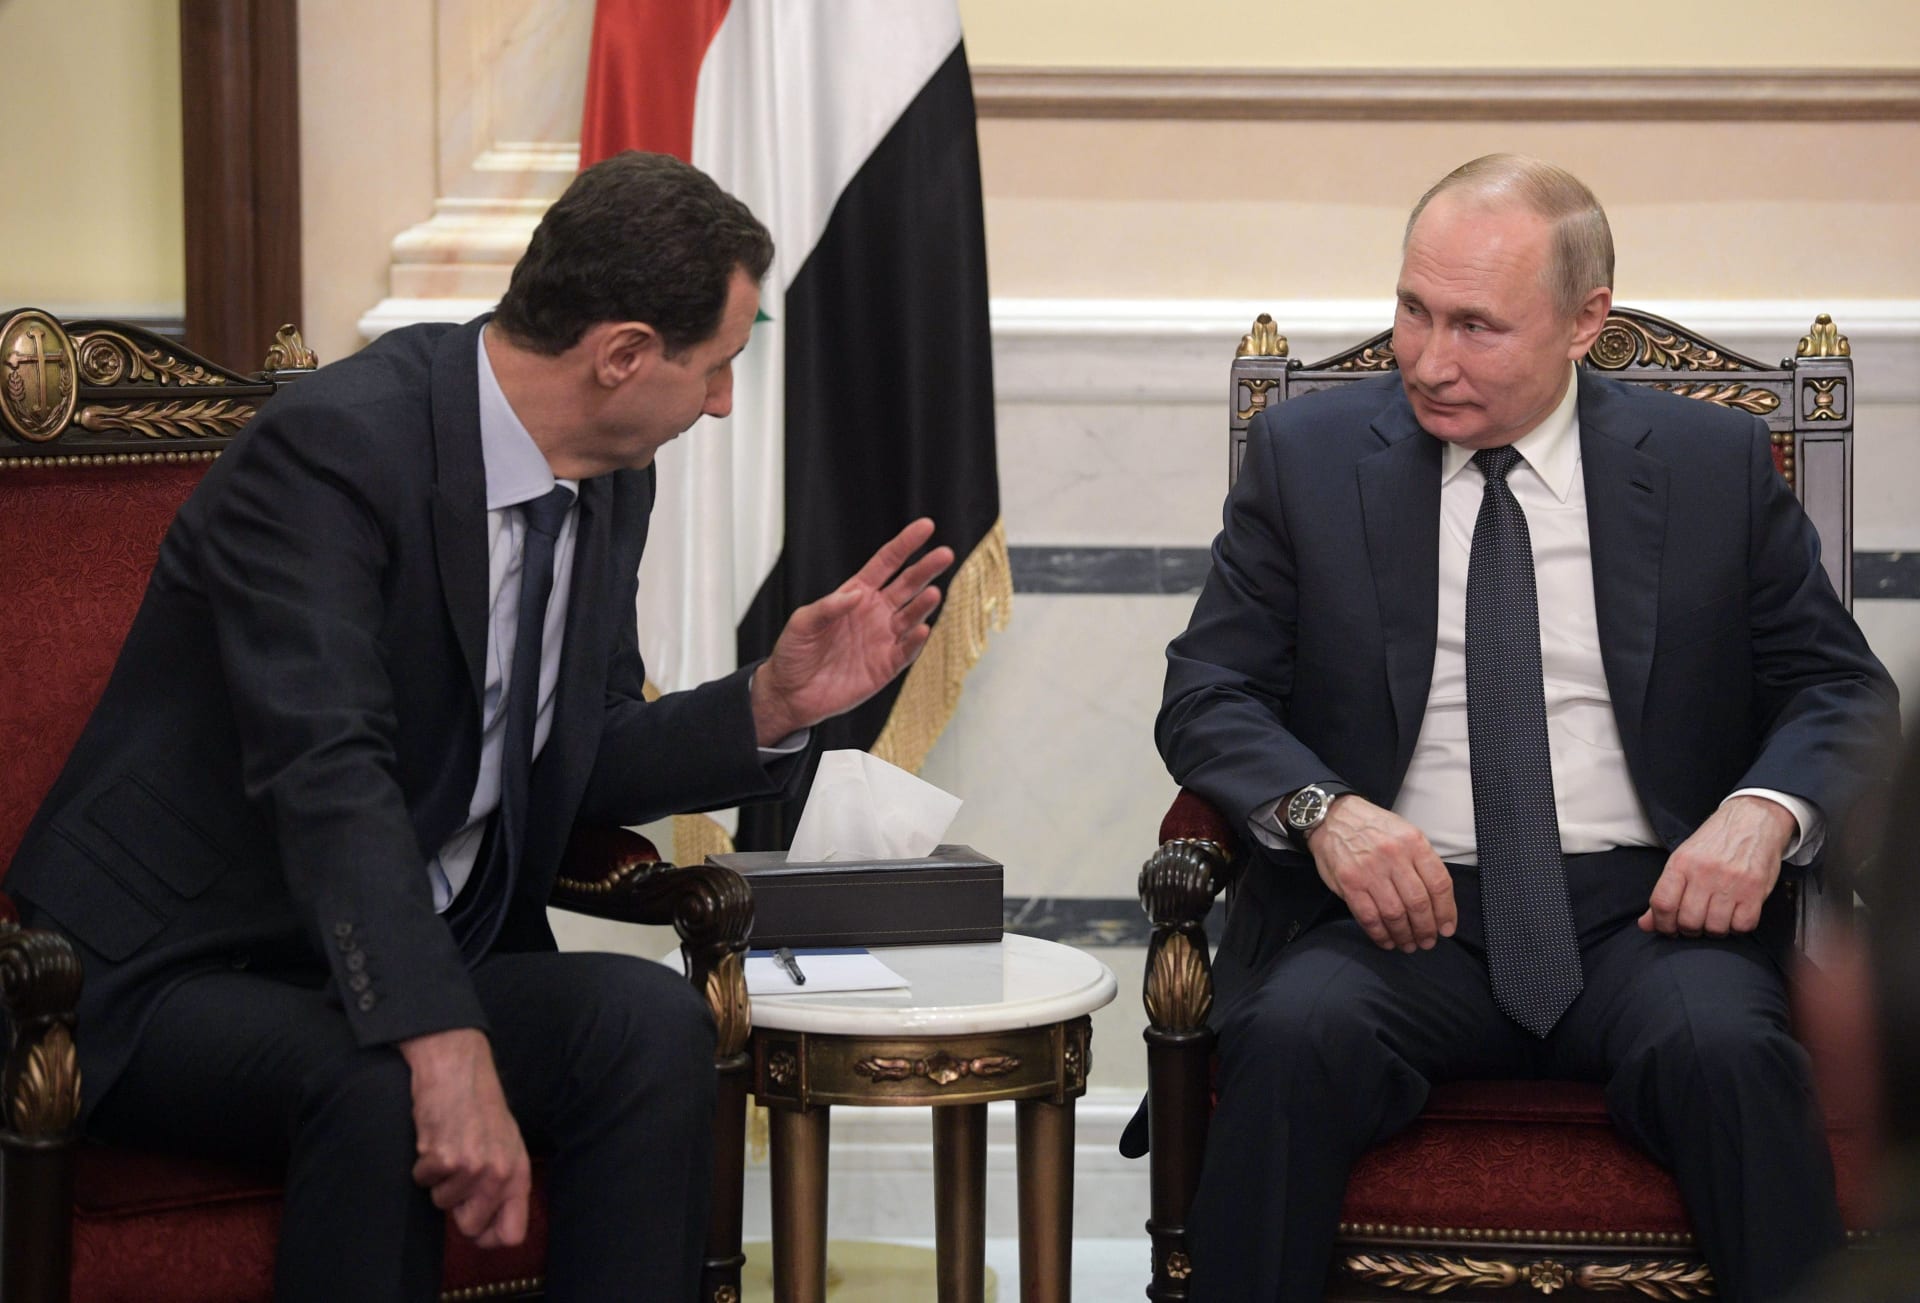 بعد ساعات من لقاء بشار الأسد.. بوتين يعزل نفسه بسبب إصابات كورونا في دائرته